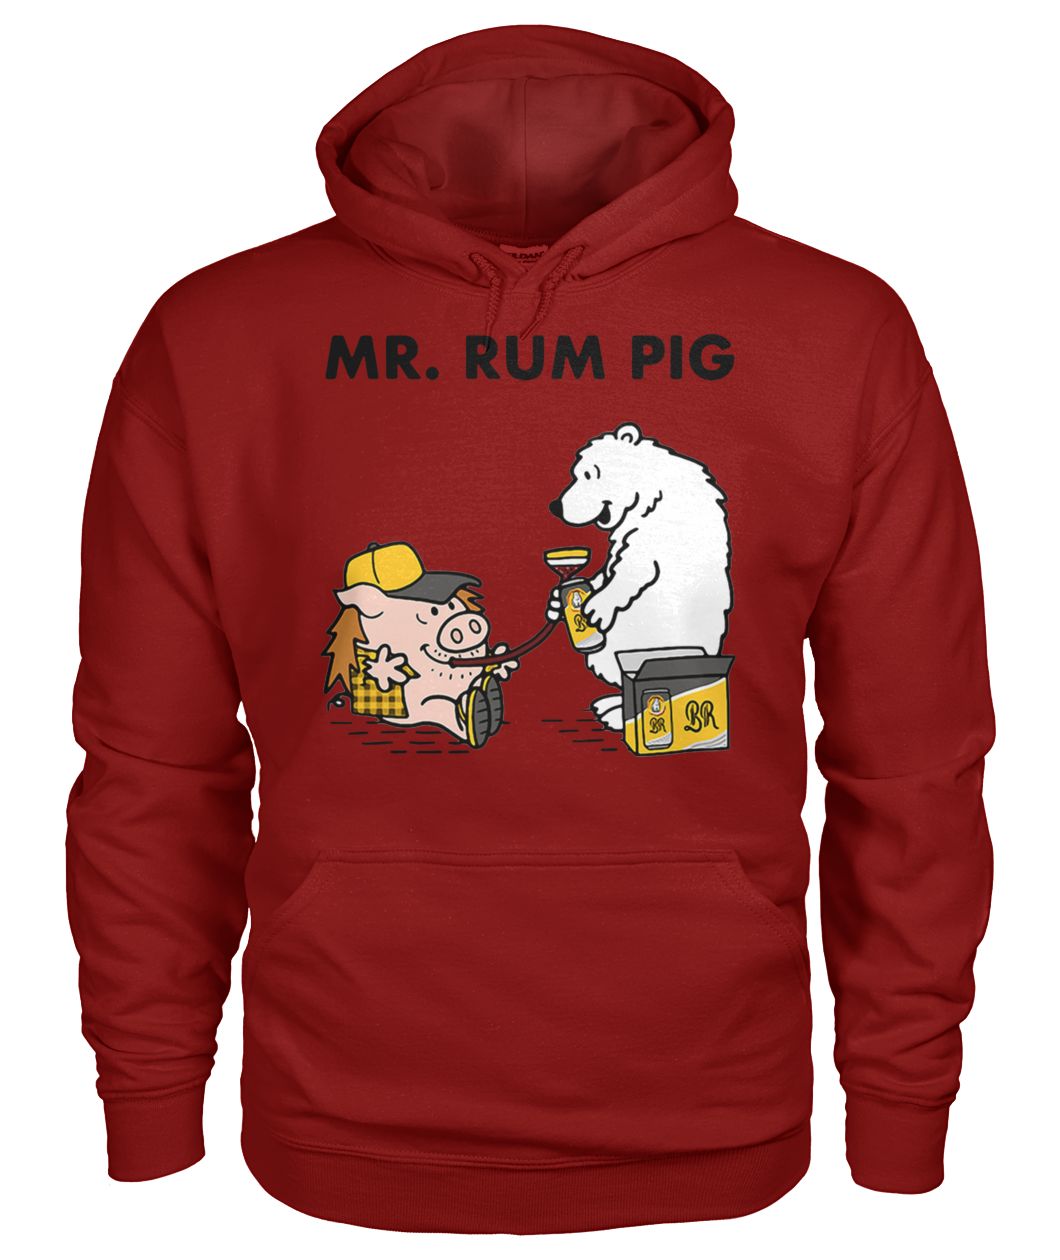 Mr rum pig gildan hoodie